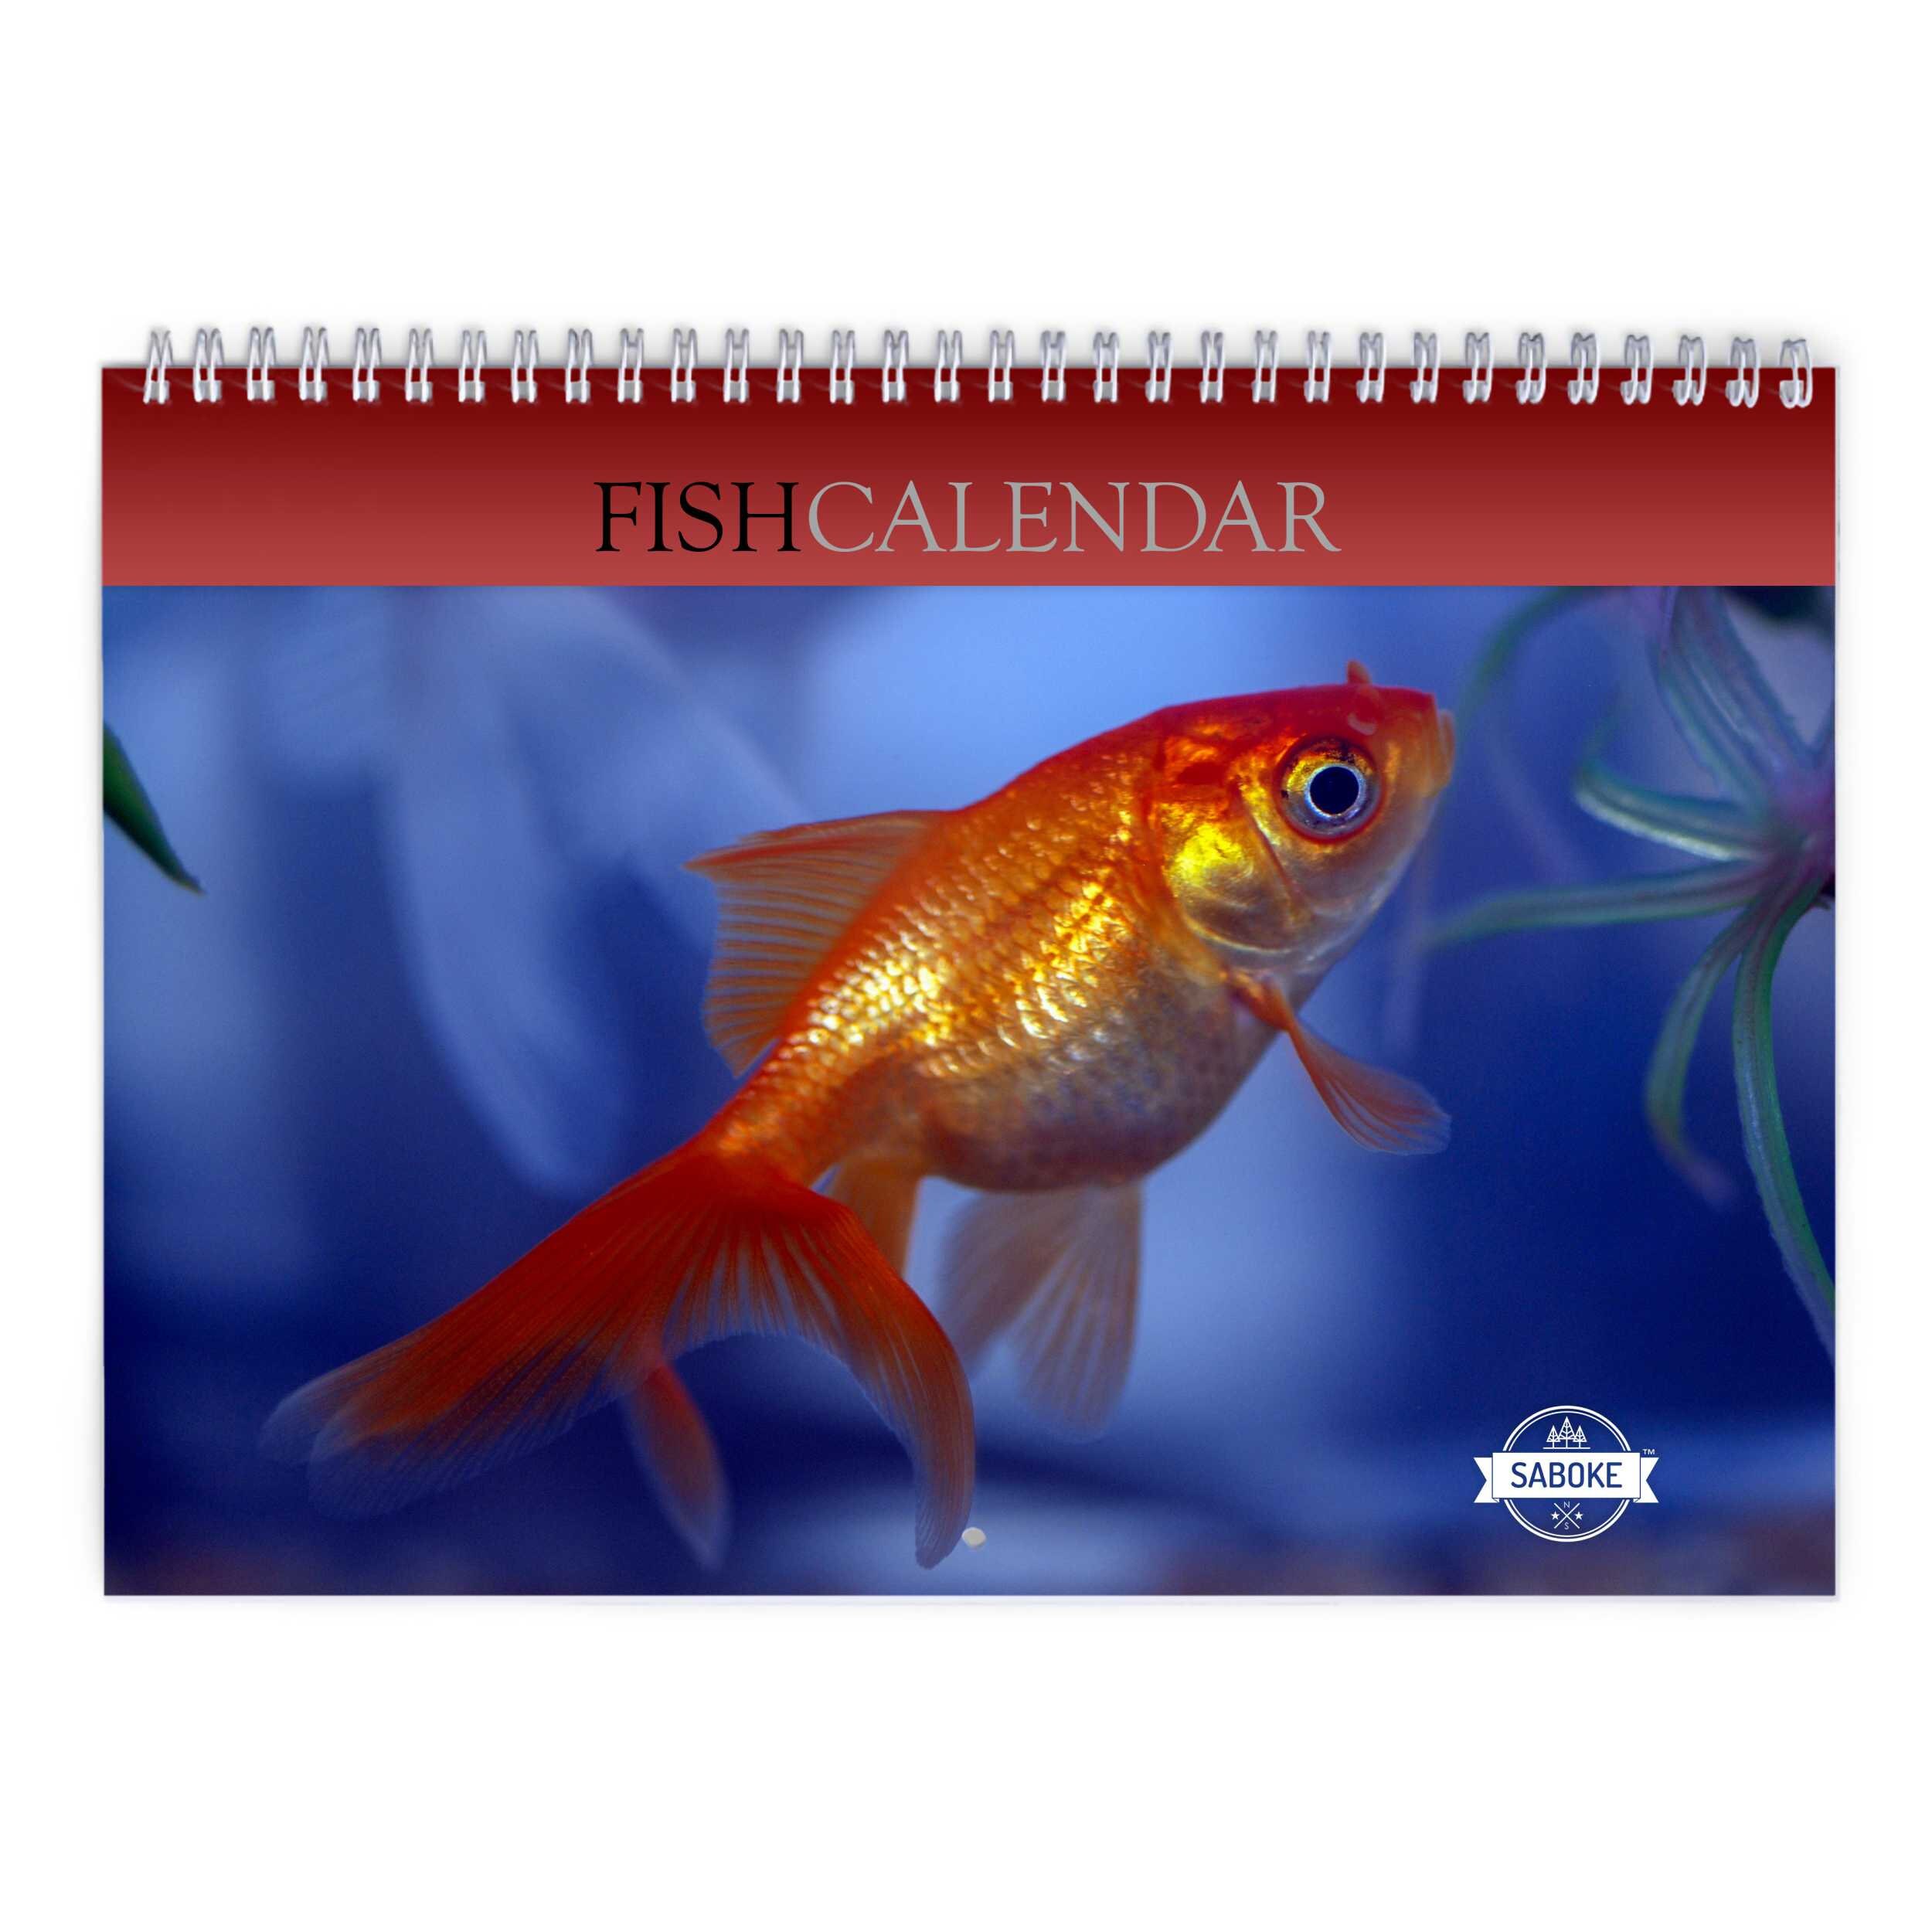 Fish Calendar -  Sweden